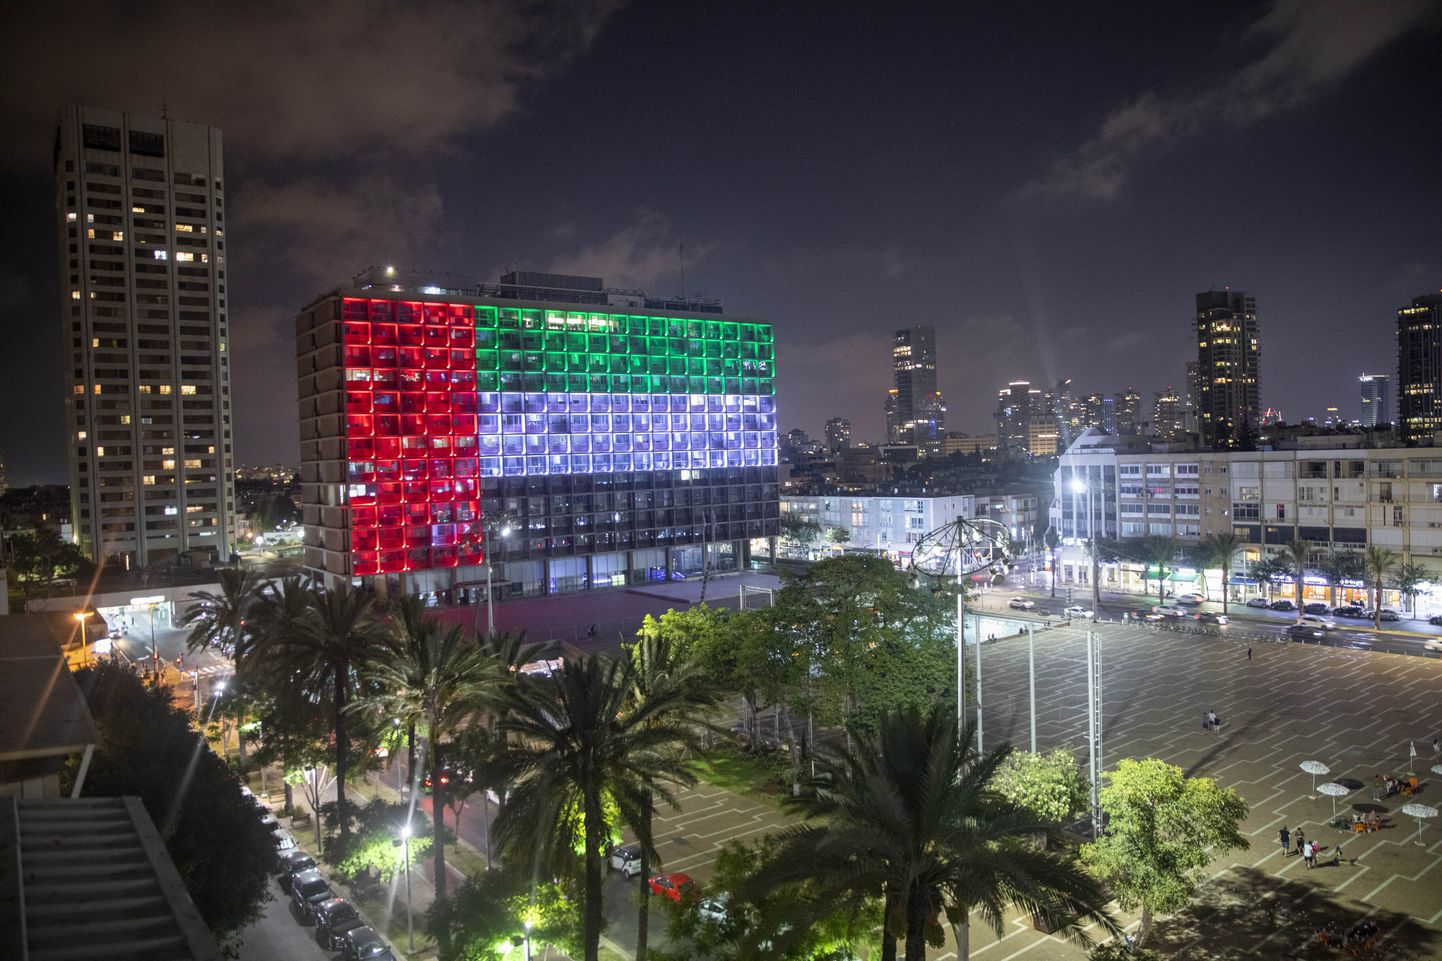 Tel Avivi linnavalitsuse hoone värvus eile Araabia Ühendemiraatide lipu värvidesse.